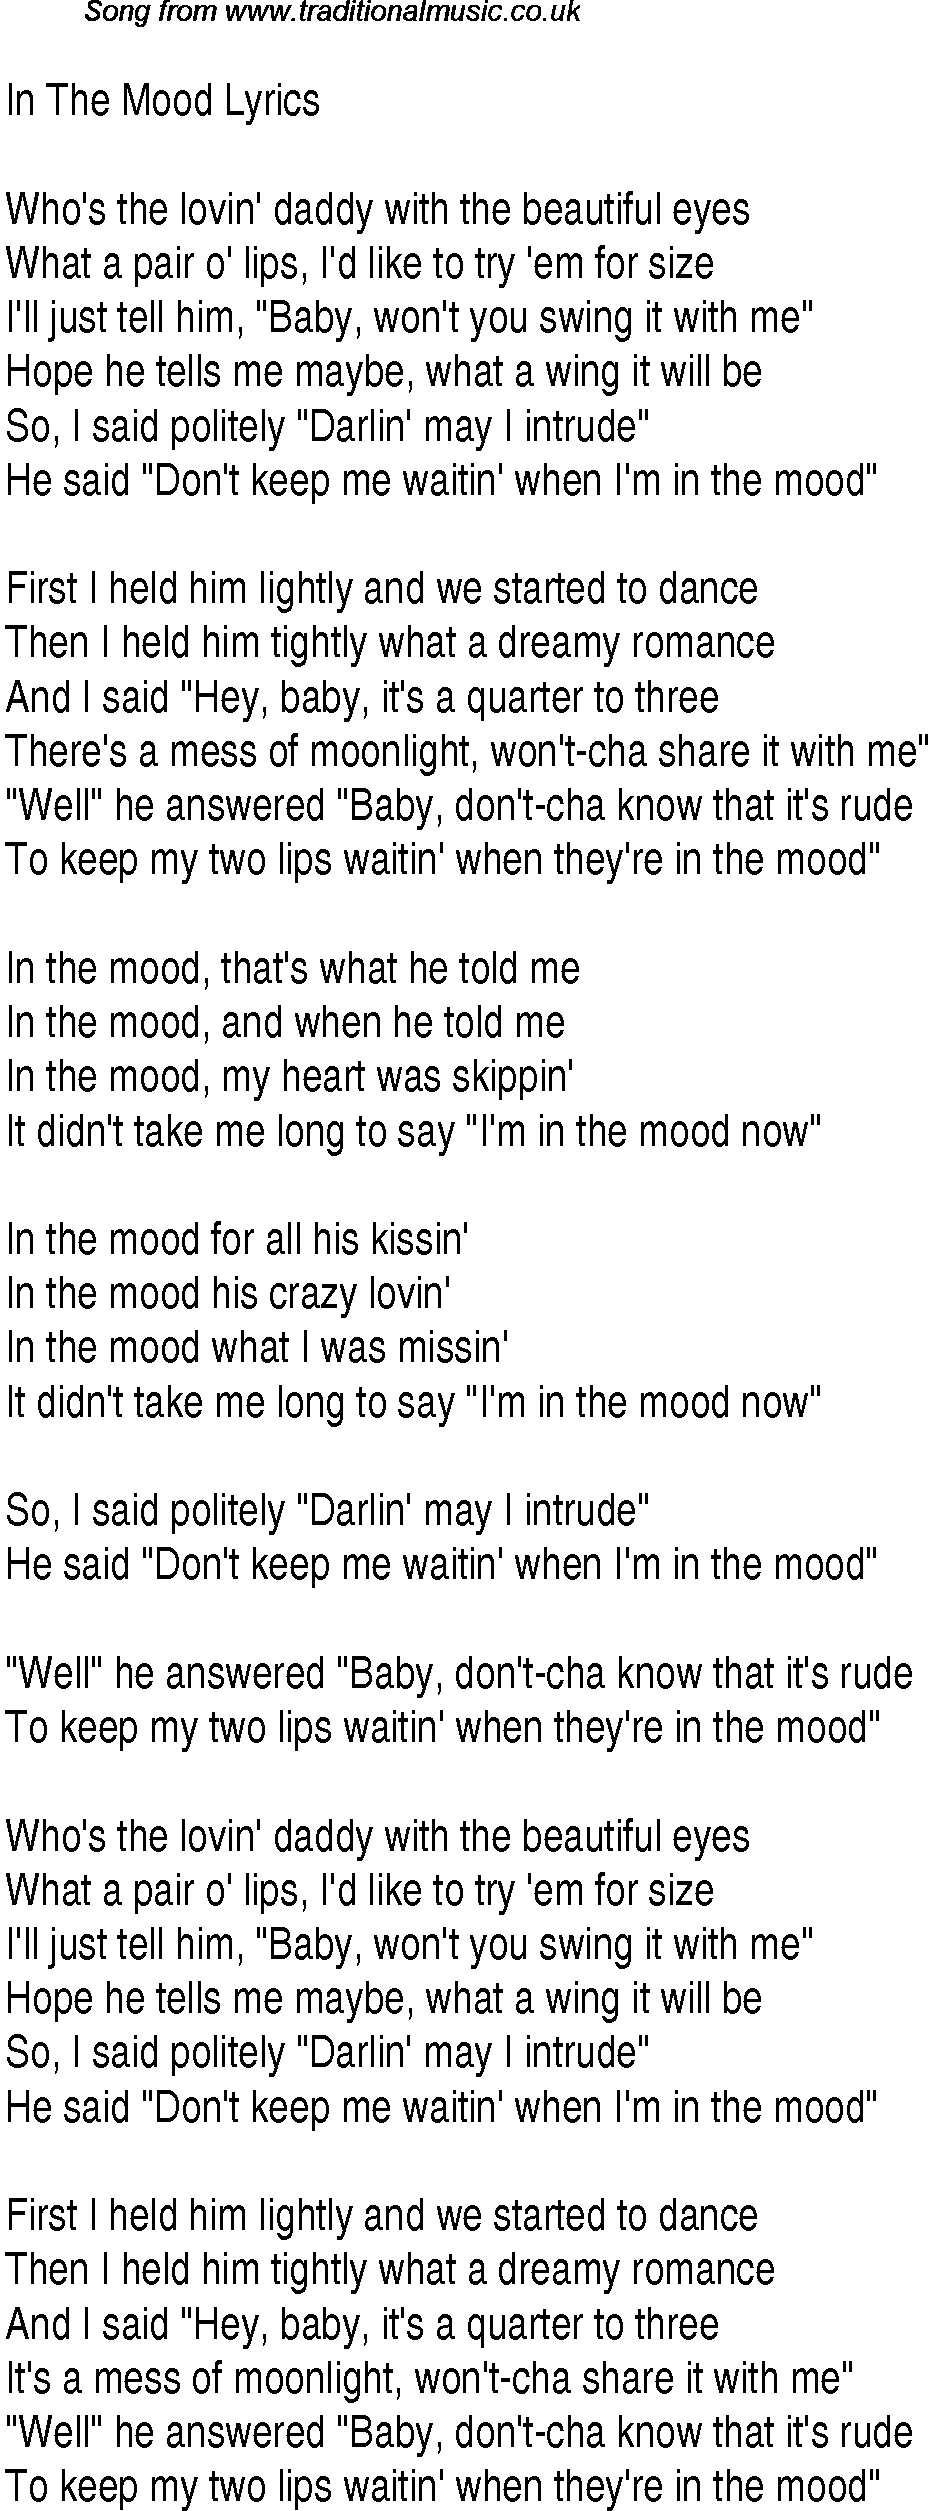 1940s top songs - lyrics for In The Mood(Glen Miller)